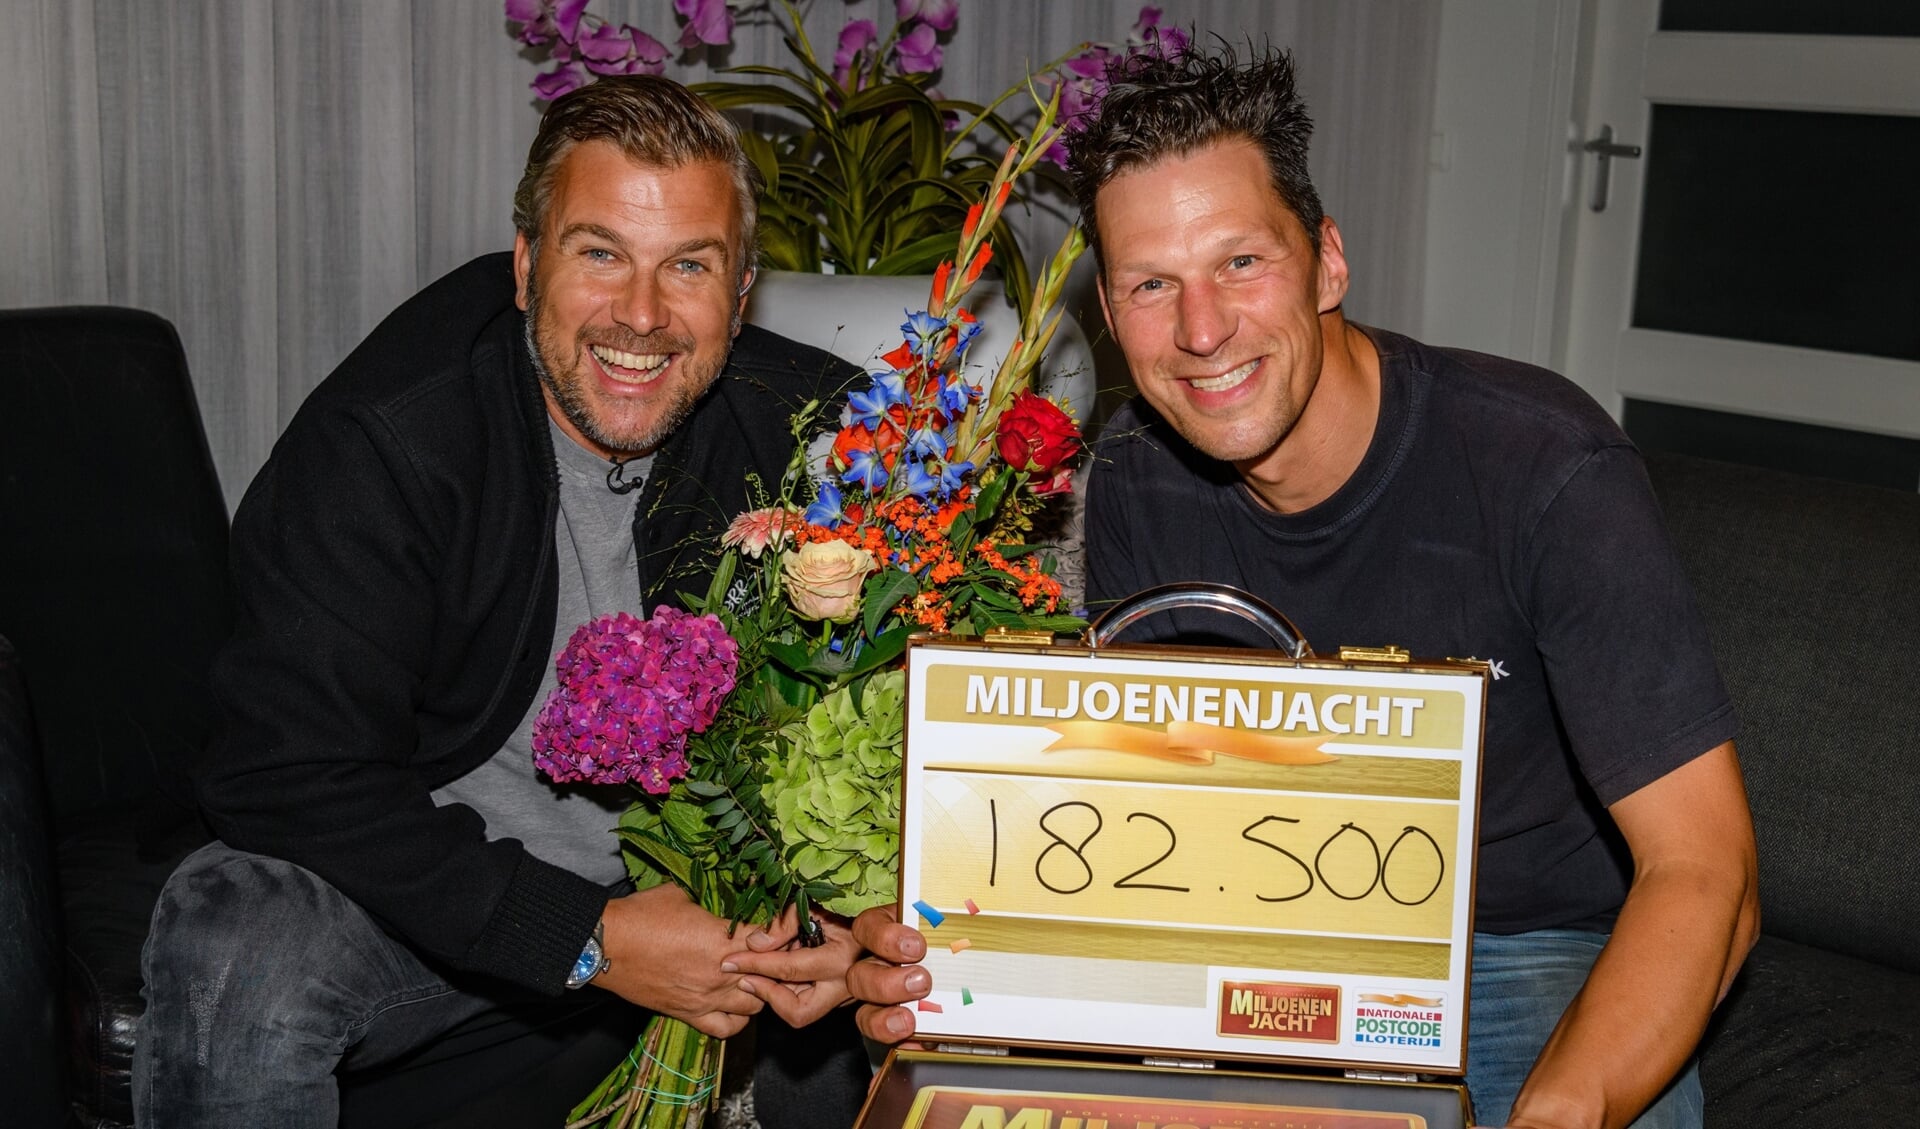 René uit Almkerk zondagavond door Winston Gerschtanowitz verrast met 182.500 euro.